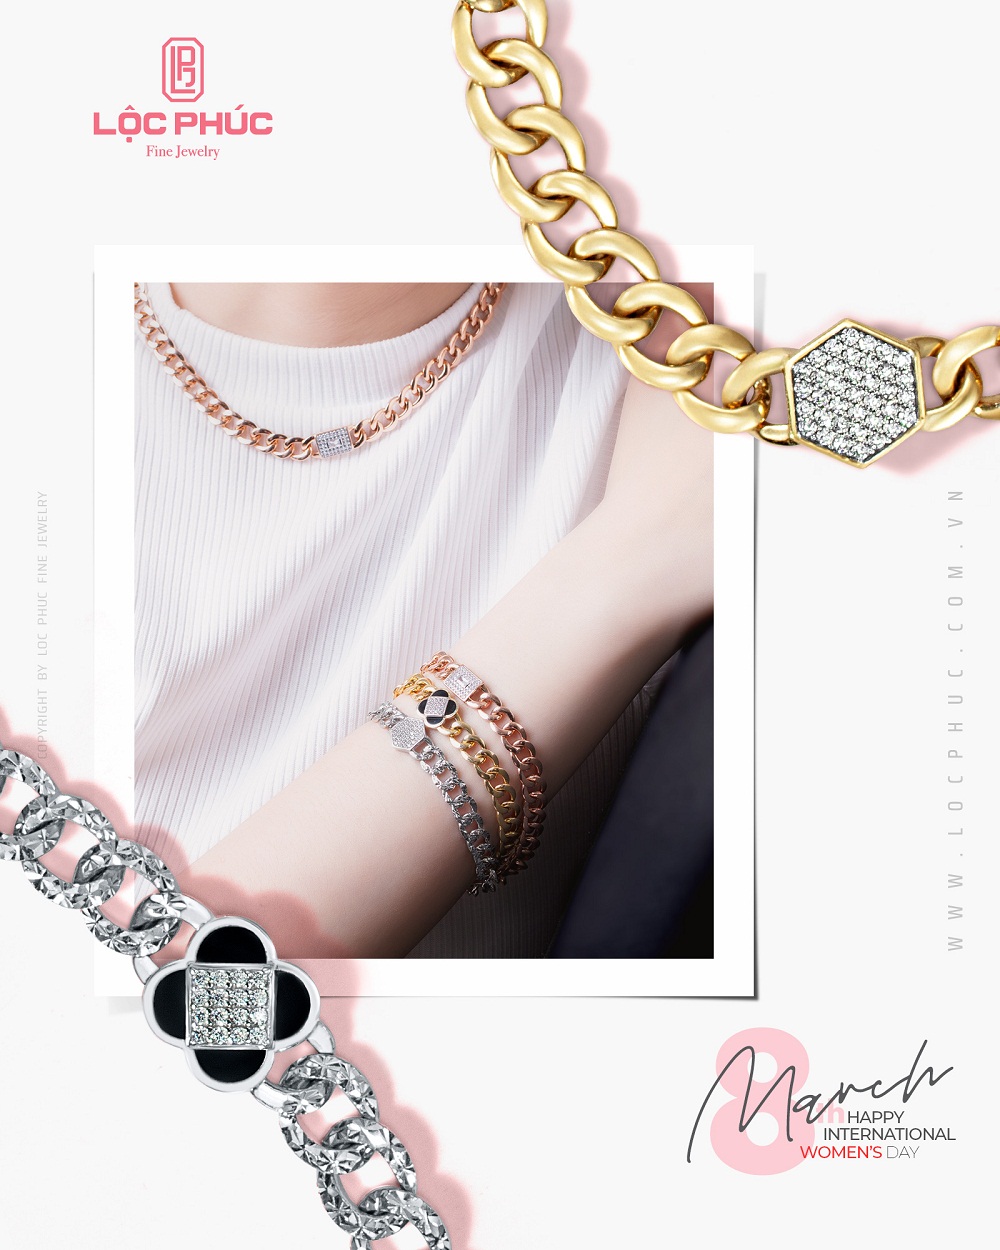 Trang sức thời trang “chain link” được làm từ chất liệu vàng, vàng trắng… giúp cho người phụ nữ vừa thời trang, cá tính nhưng cũng đầy thanh lịch